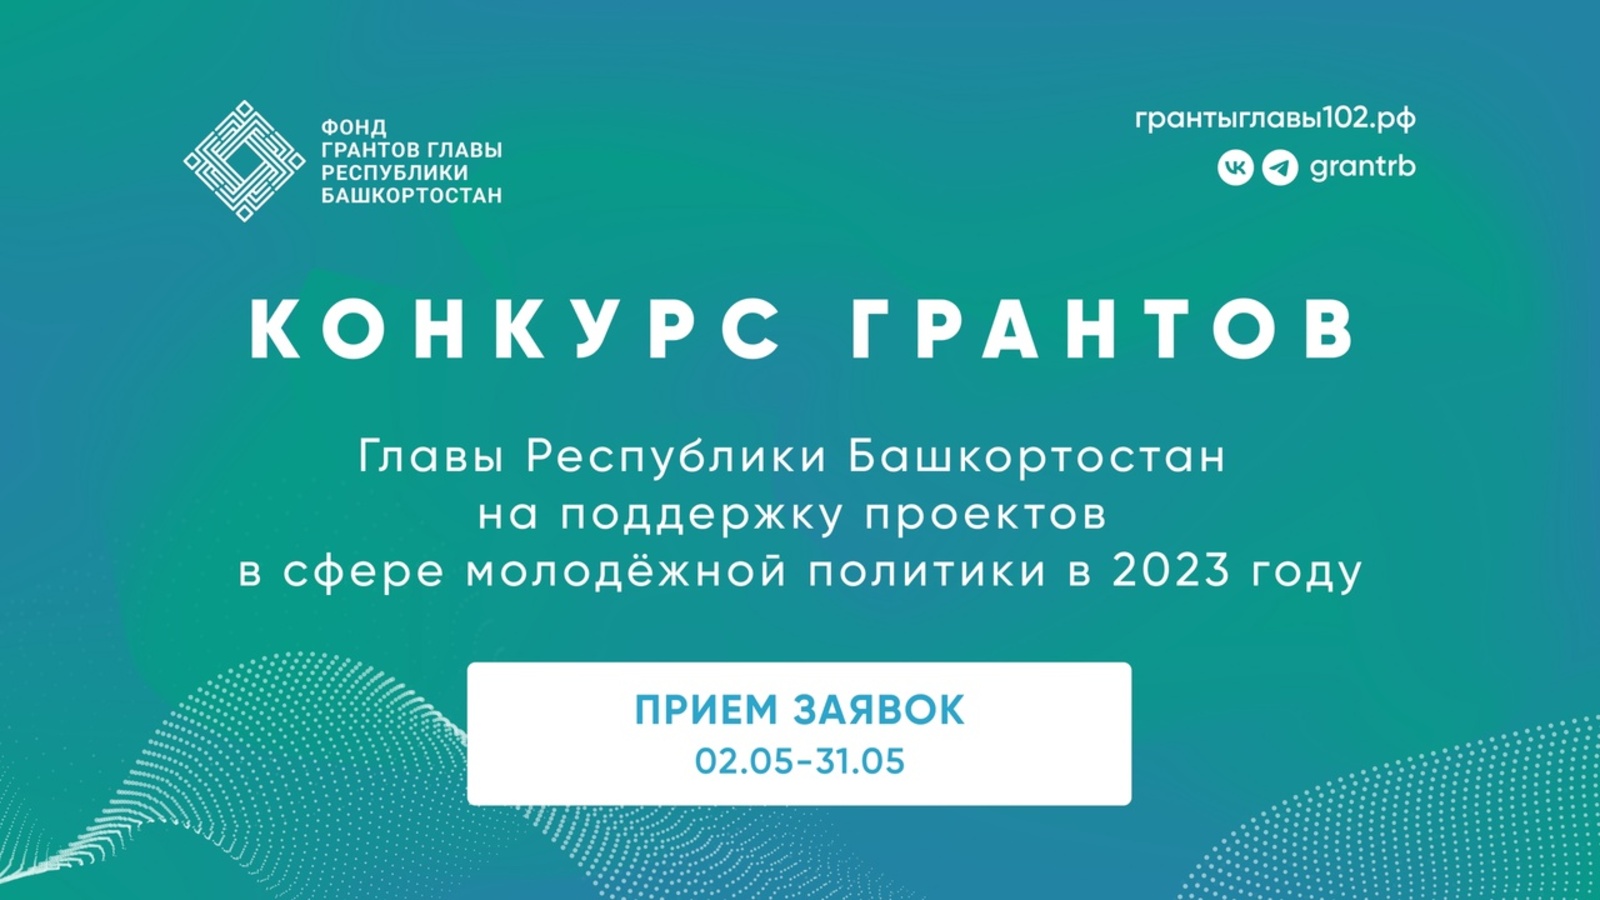 Открыт прием заявок на конкурс грантов Главы Республики Башкортостан в сфере молодежной политики